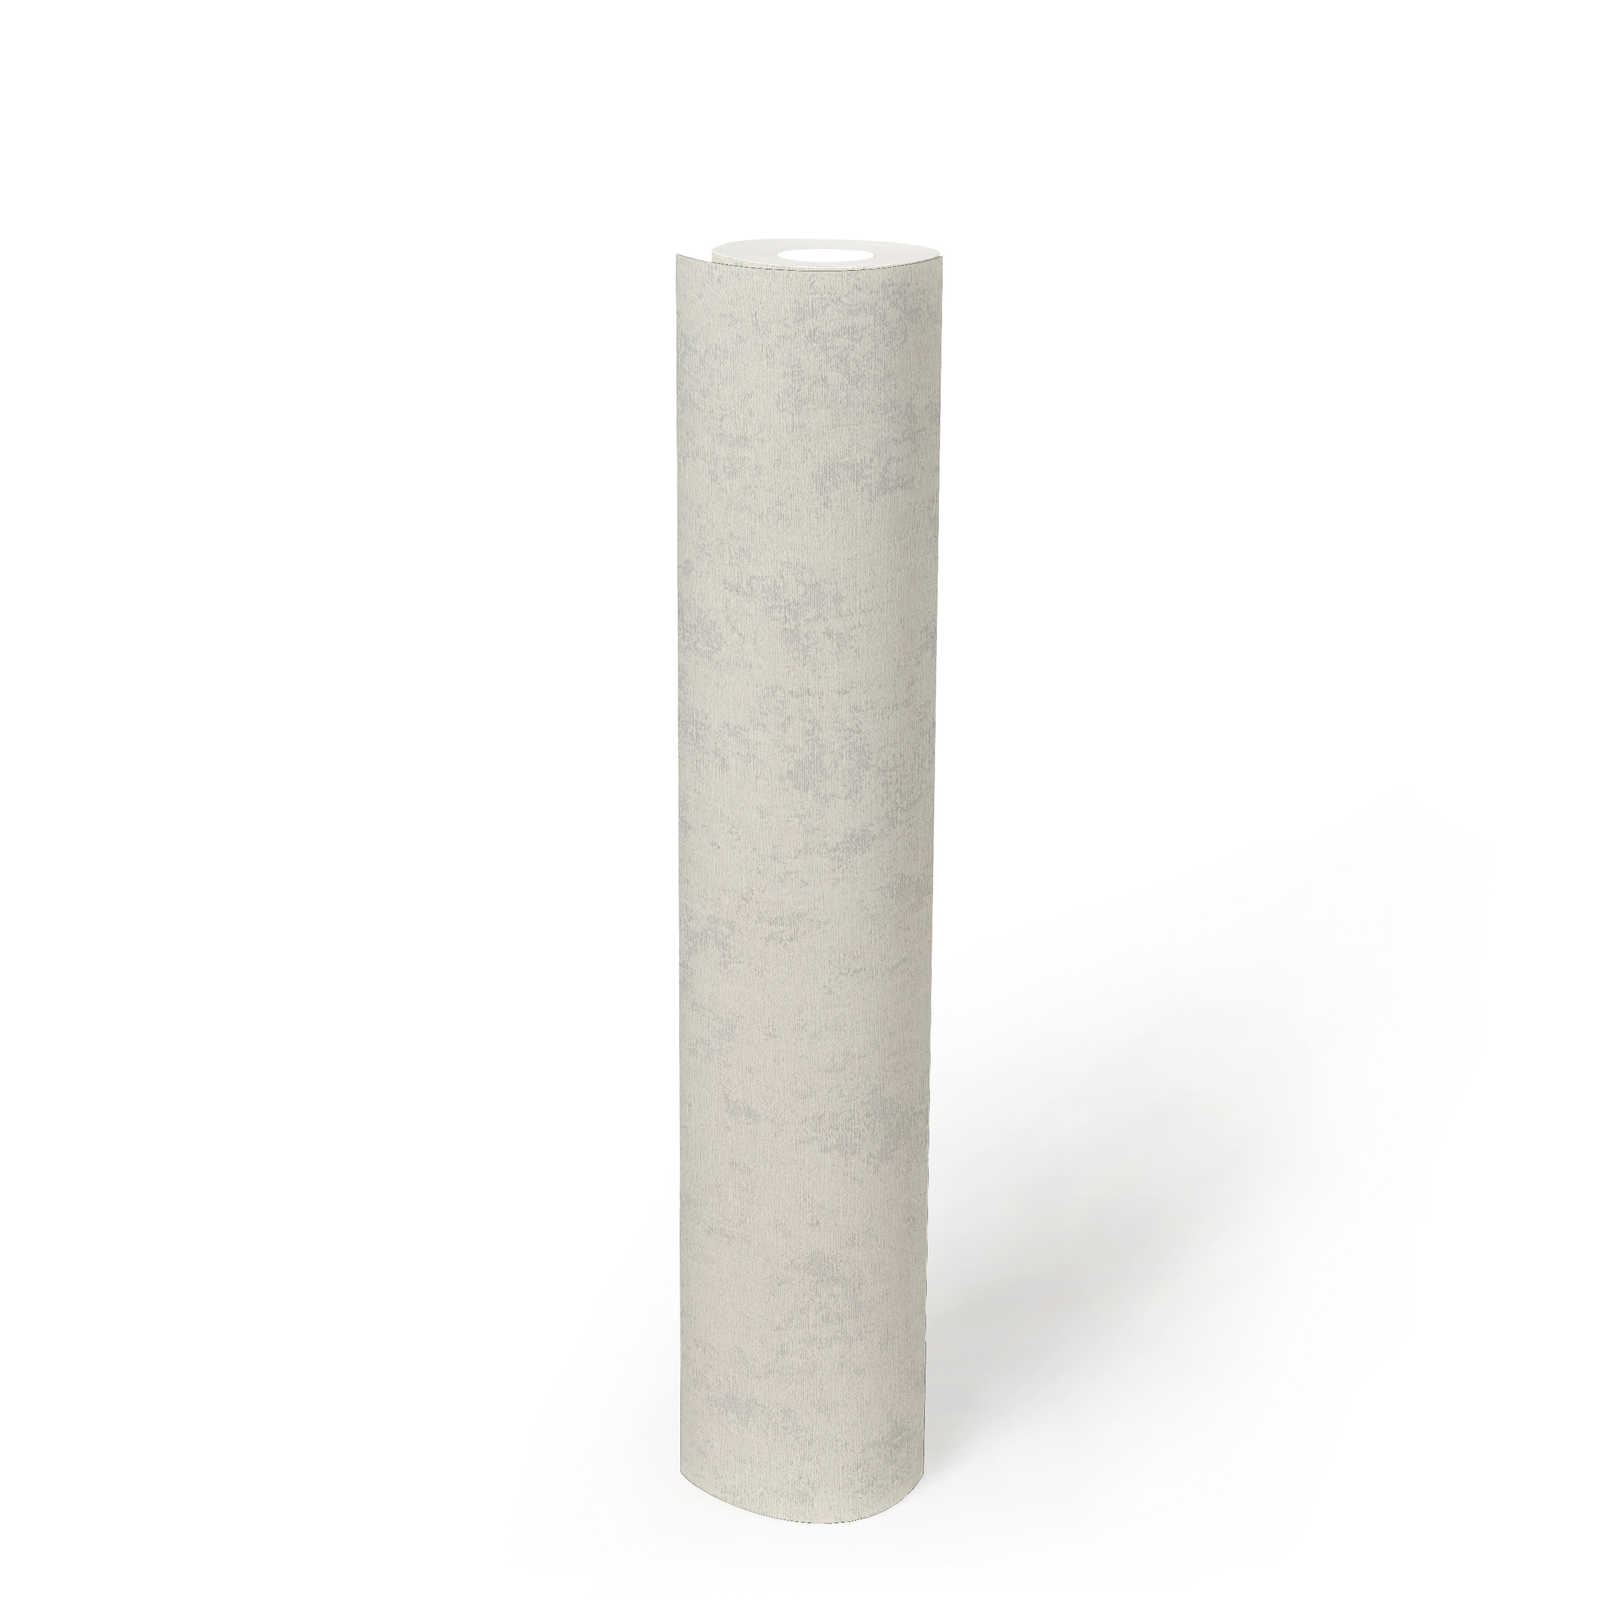             Papier peint de style scandinave uni design structuré - gris, blanc
        